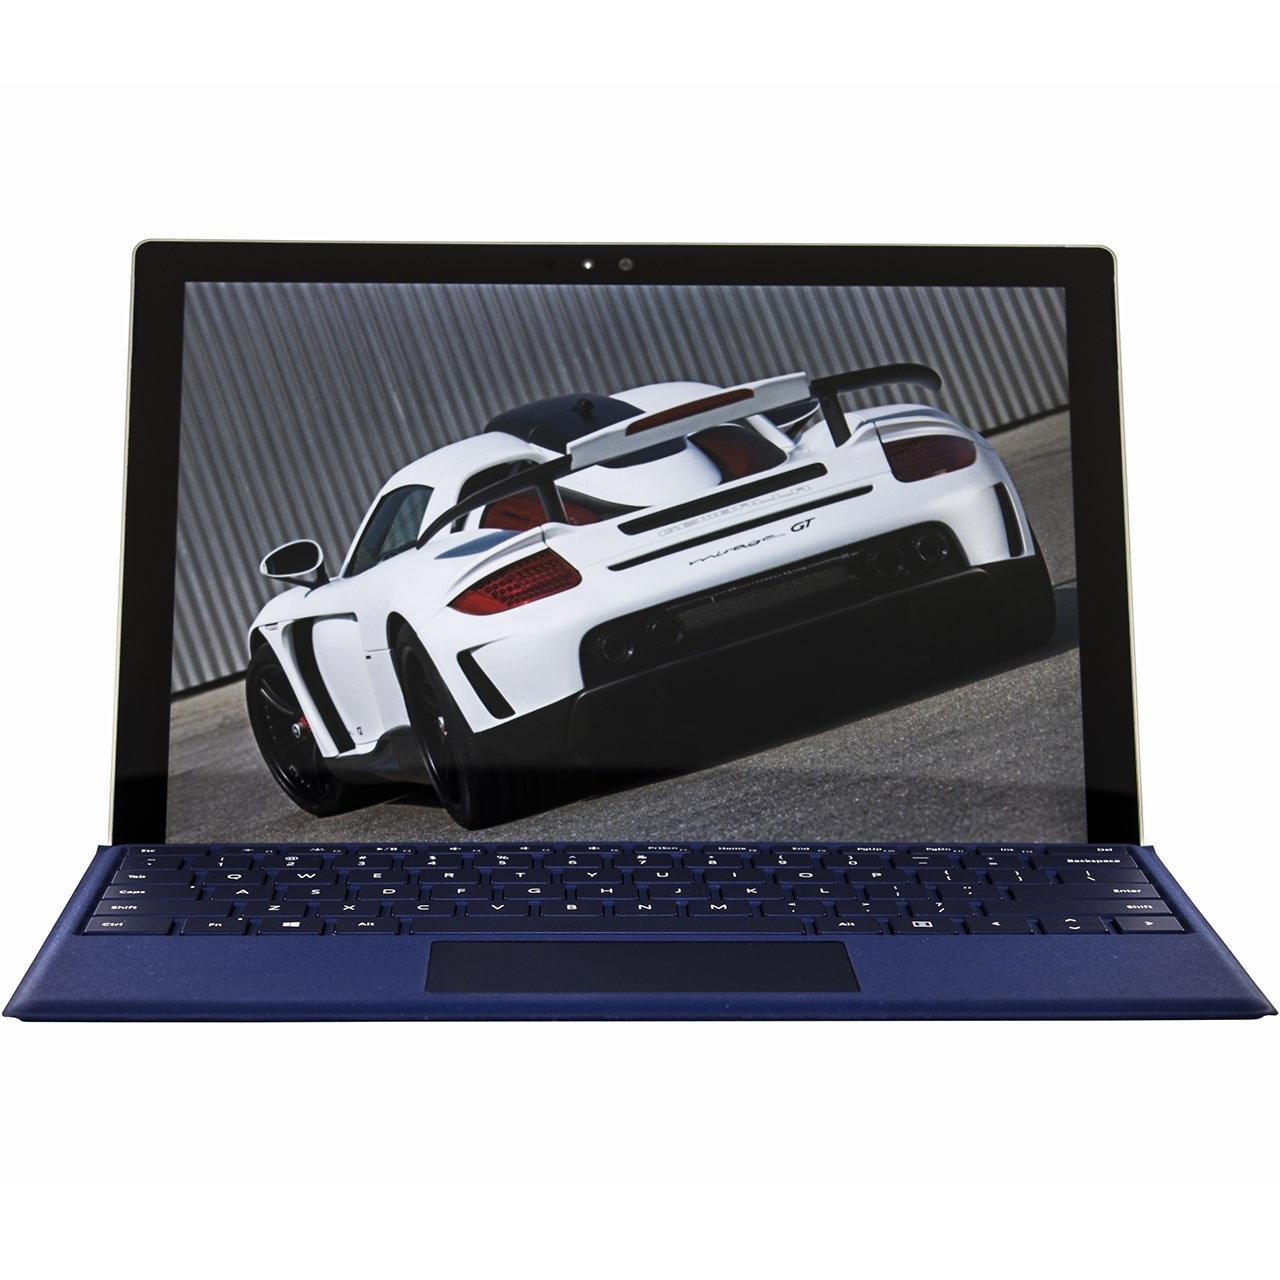 تبلت مایکروسافت مدل Surface Pro 4 - F به همراه کیبورد سرمه ای Dark Blue Type Cover و کیف Golden Guard - ظرفیت 512 گیگابایت